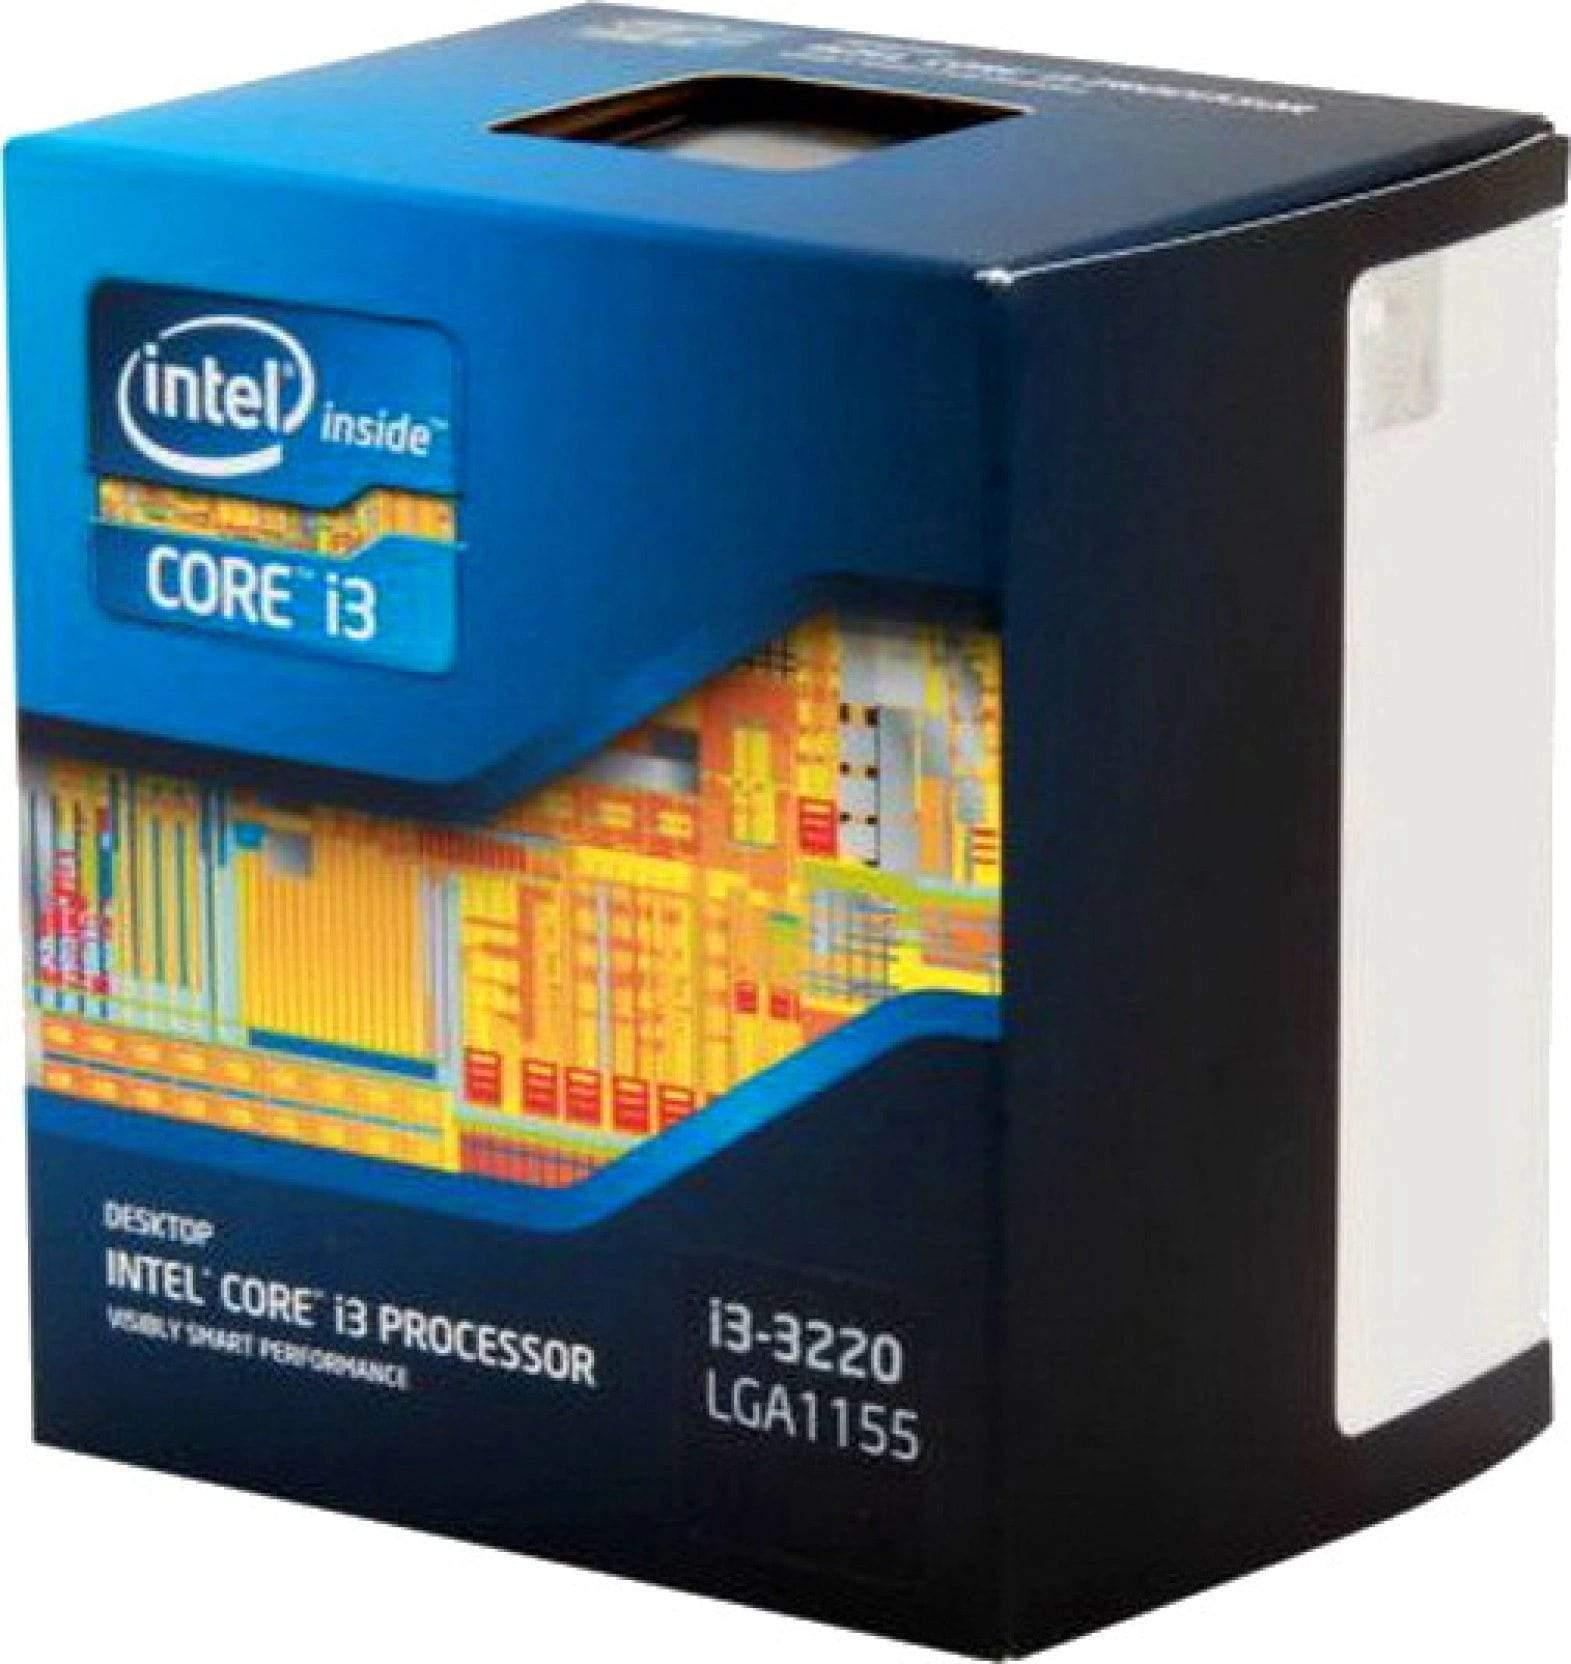 Intel Core i3-3220 (3rd Gen) Processor-Laptops & Computer Peripherals-dealsplant